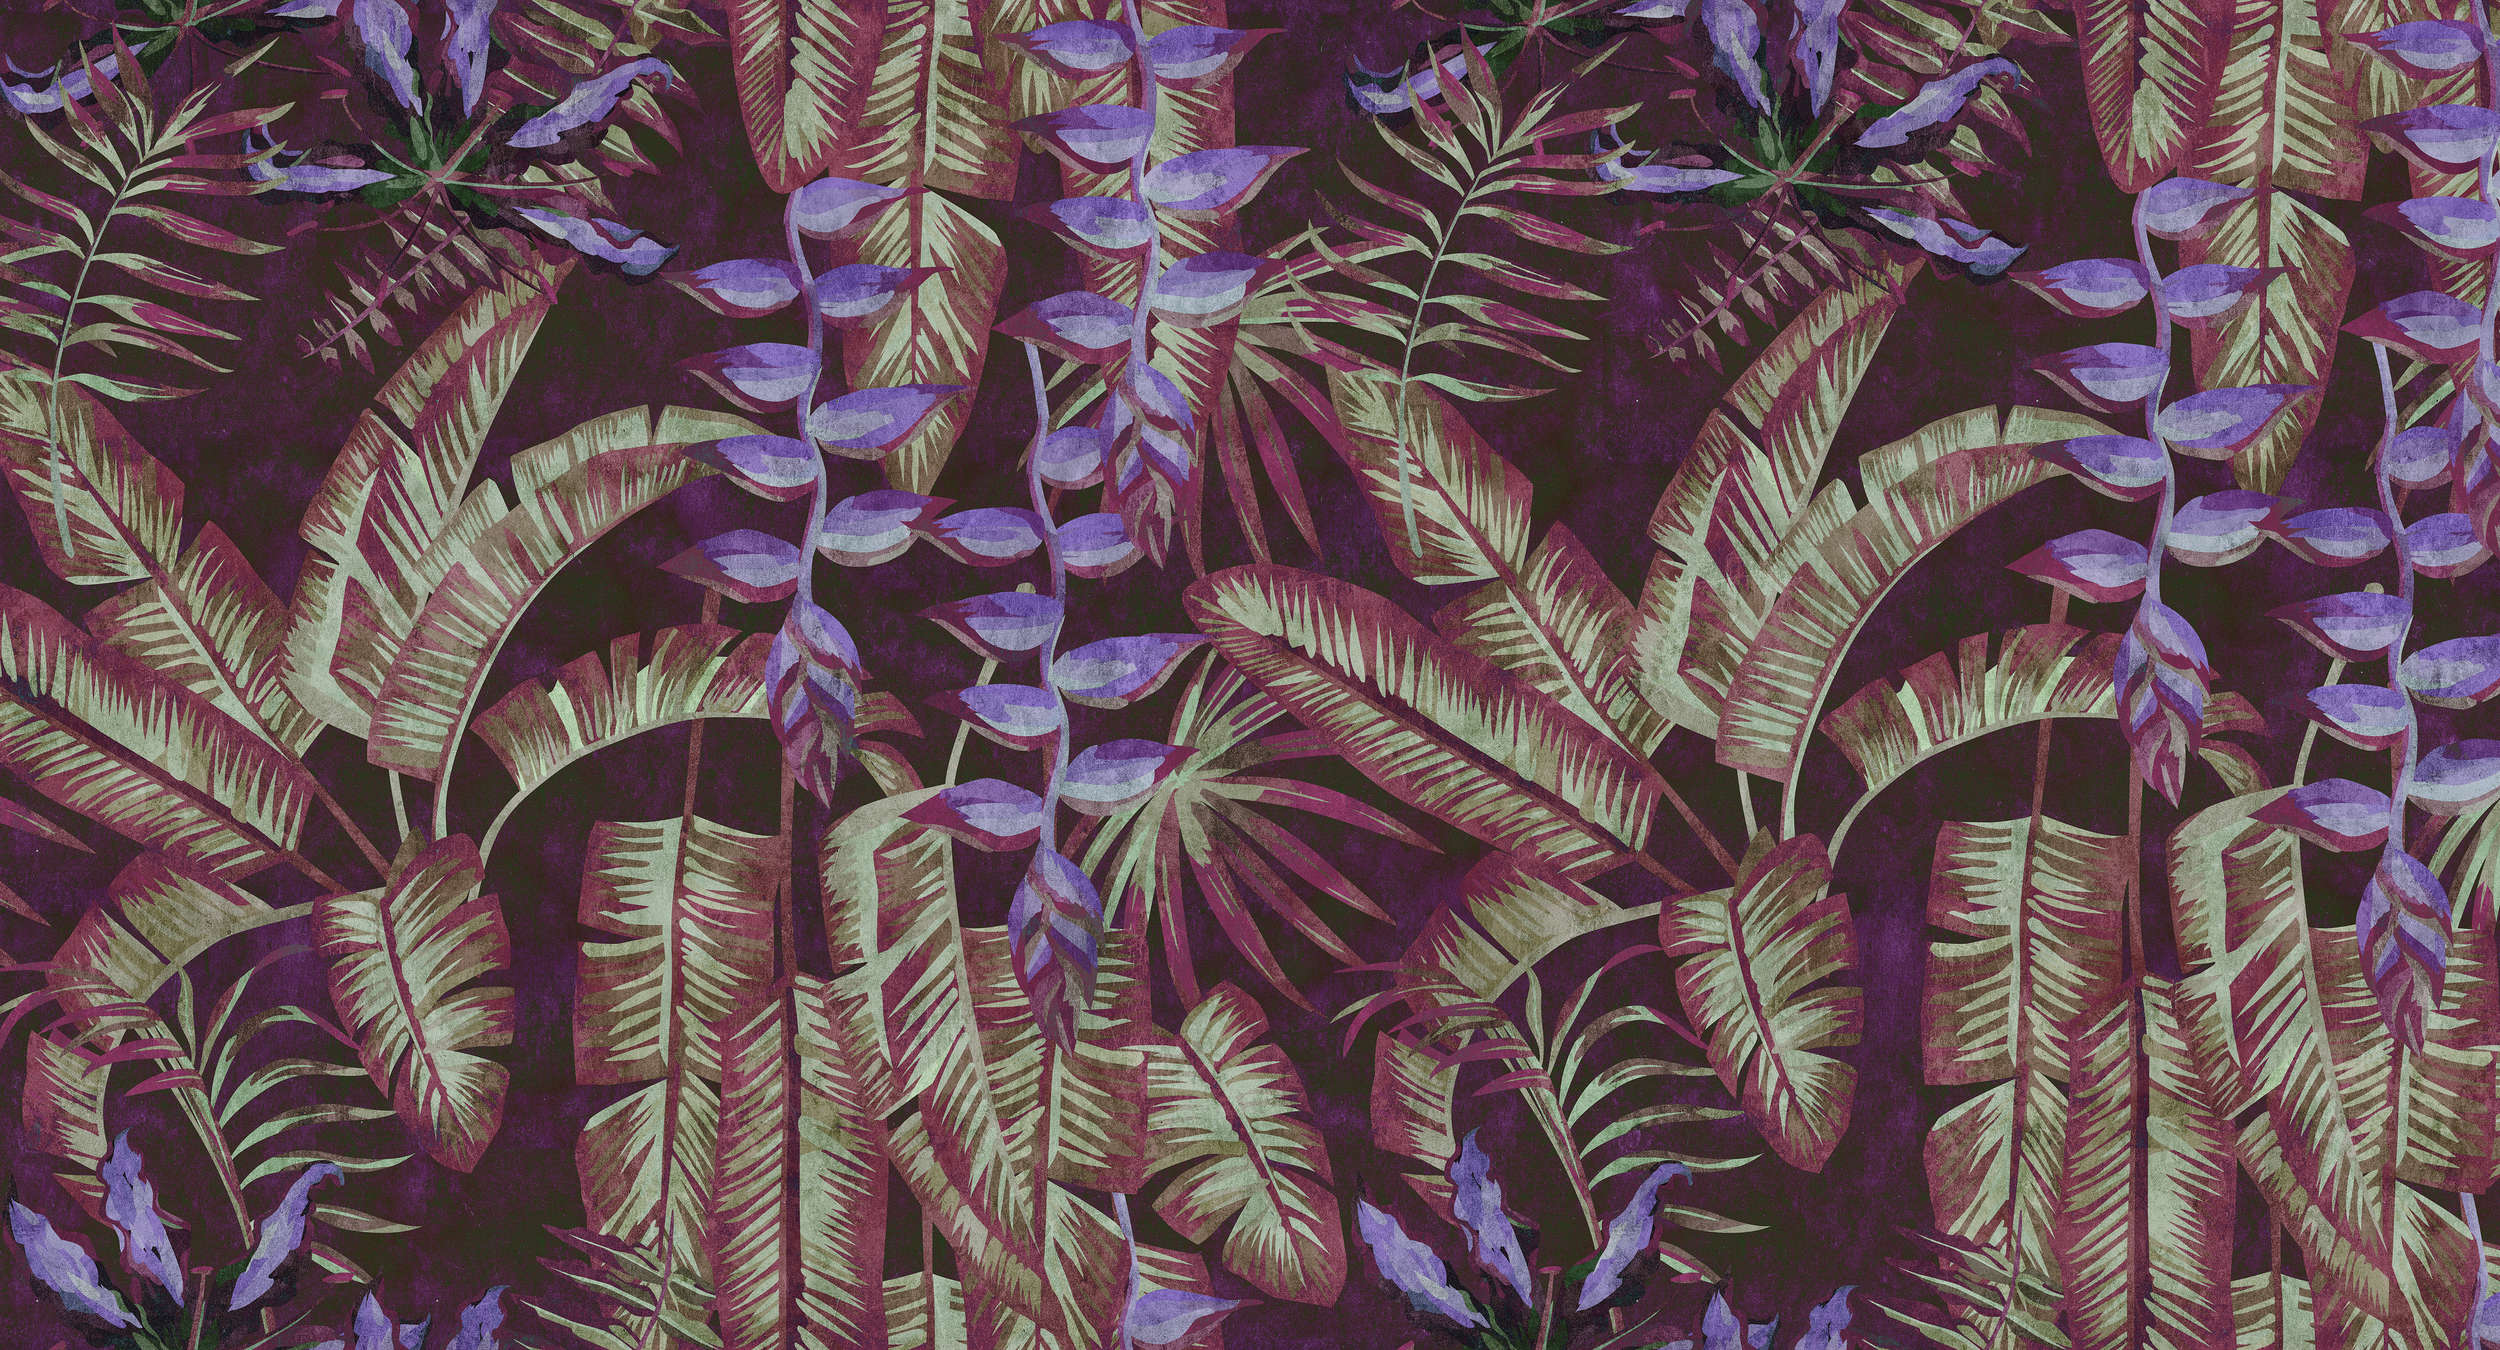             Tropicana 3 - Papier peint tropical à structure de papier buvard avec feuilles & fougères - rouge, violet | intissé lisse nacré
        